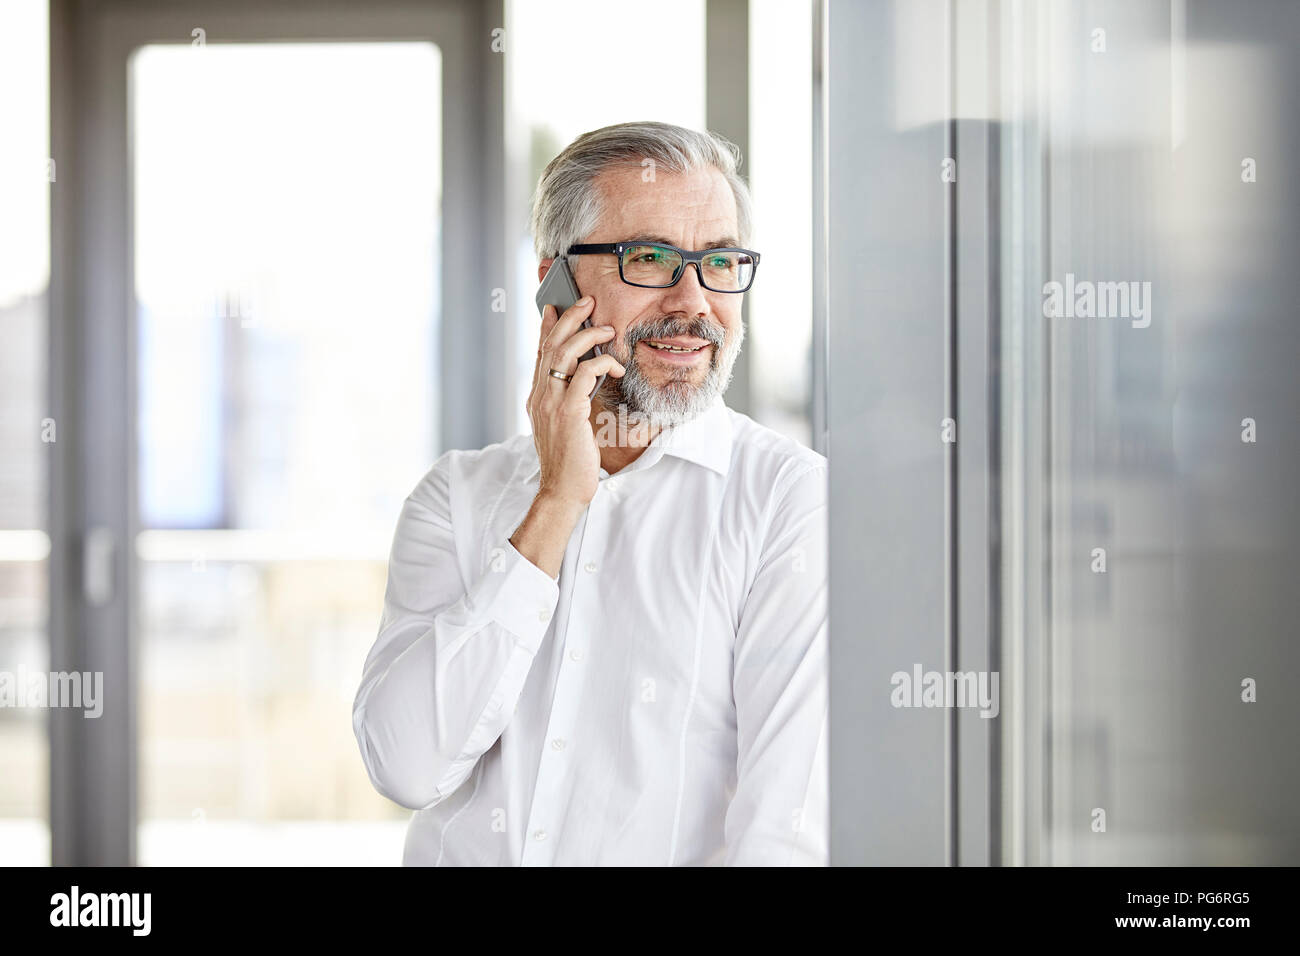 Empresario sonriente hablando por teléfono celular en la ventana Foto de stock